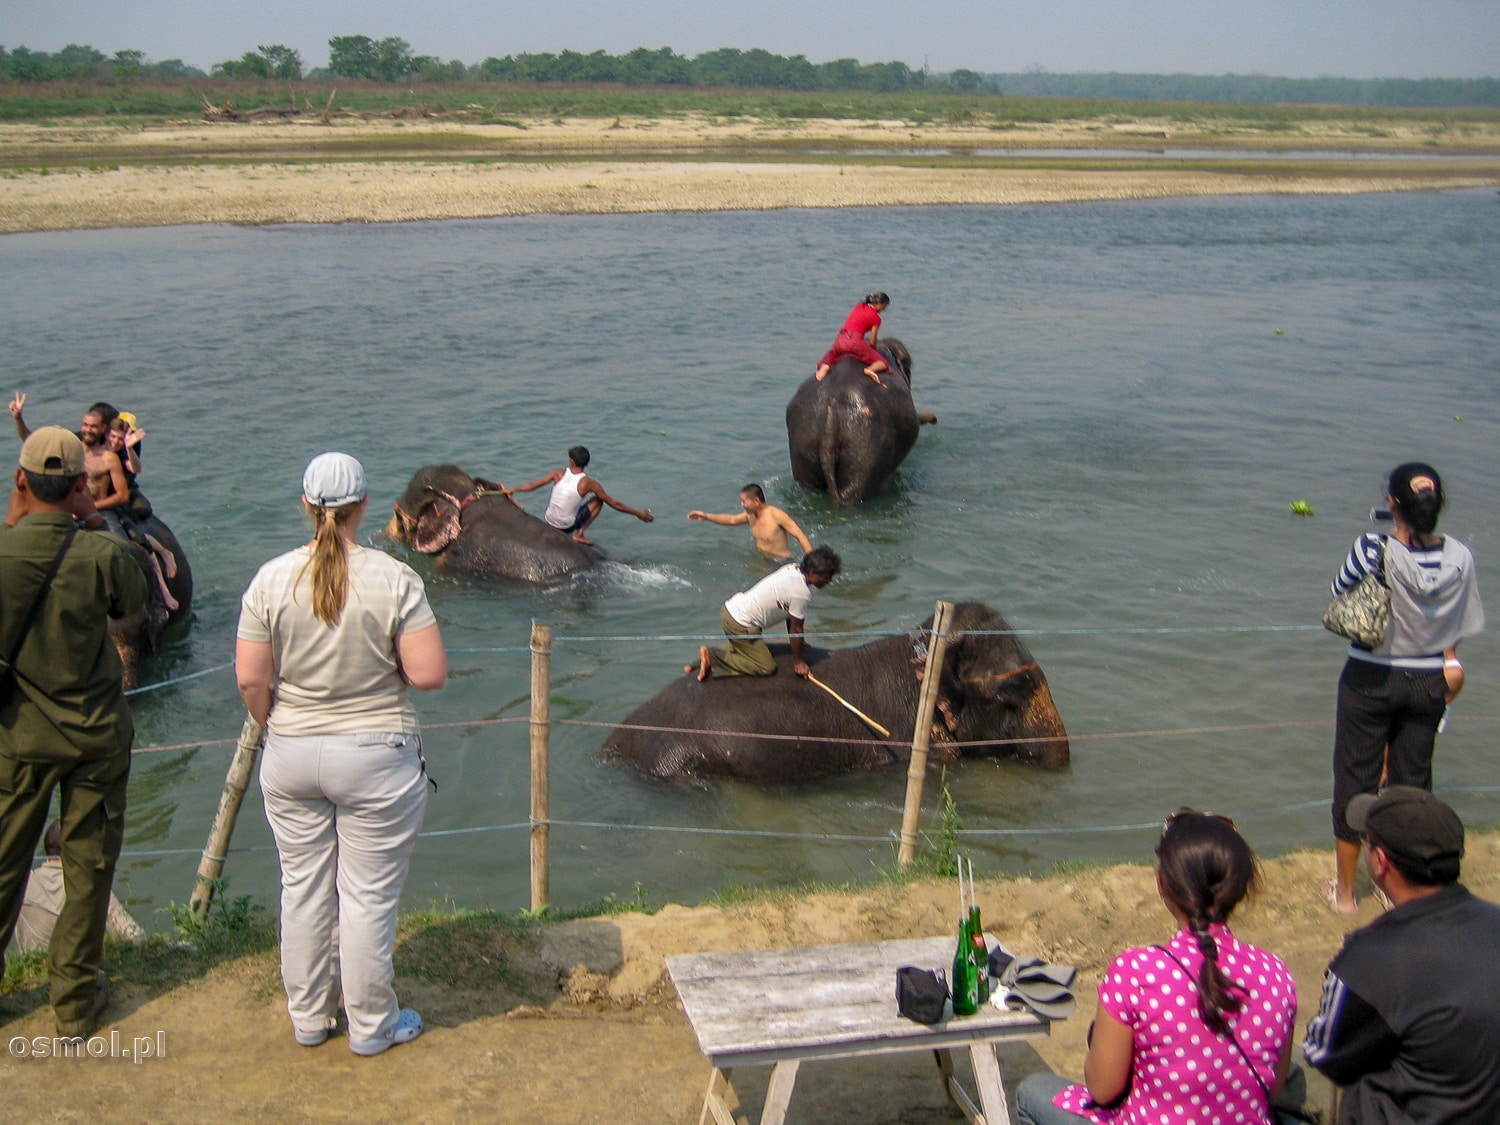 Kąpiel ze słoniem to jedna z głównych atrakcji turystycznych w Sauraha.